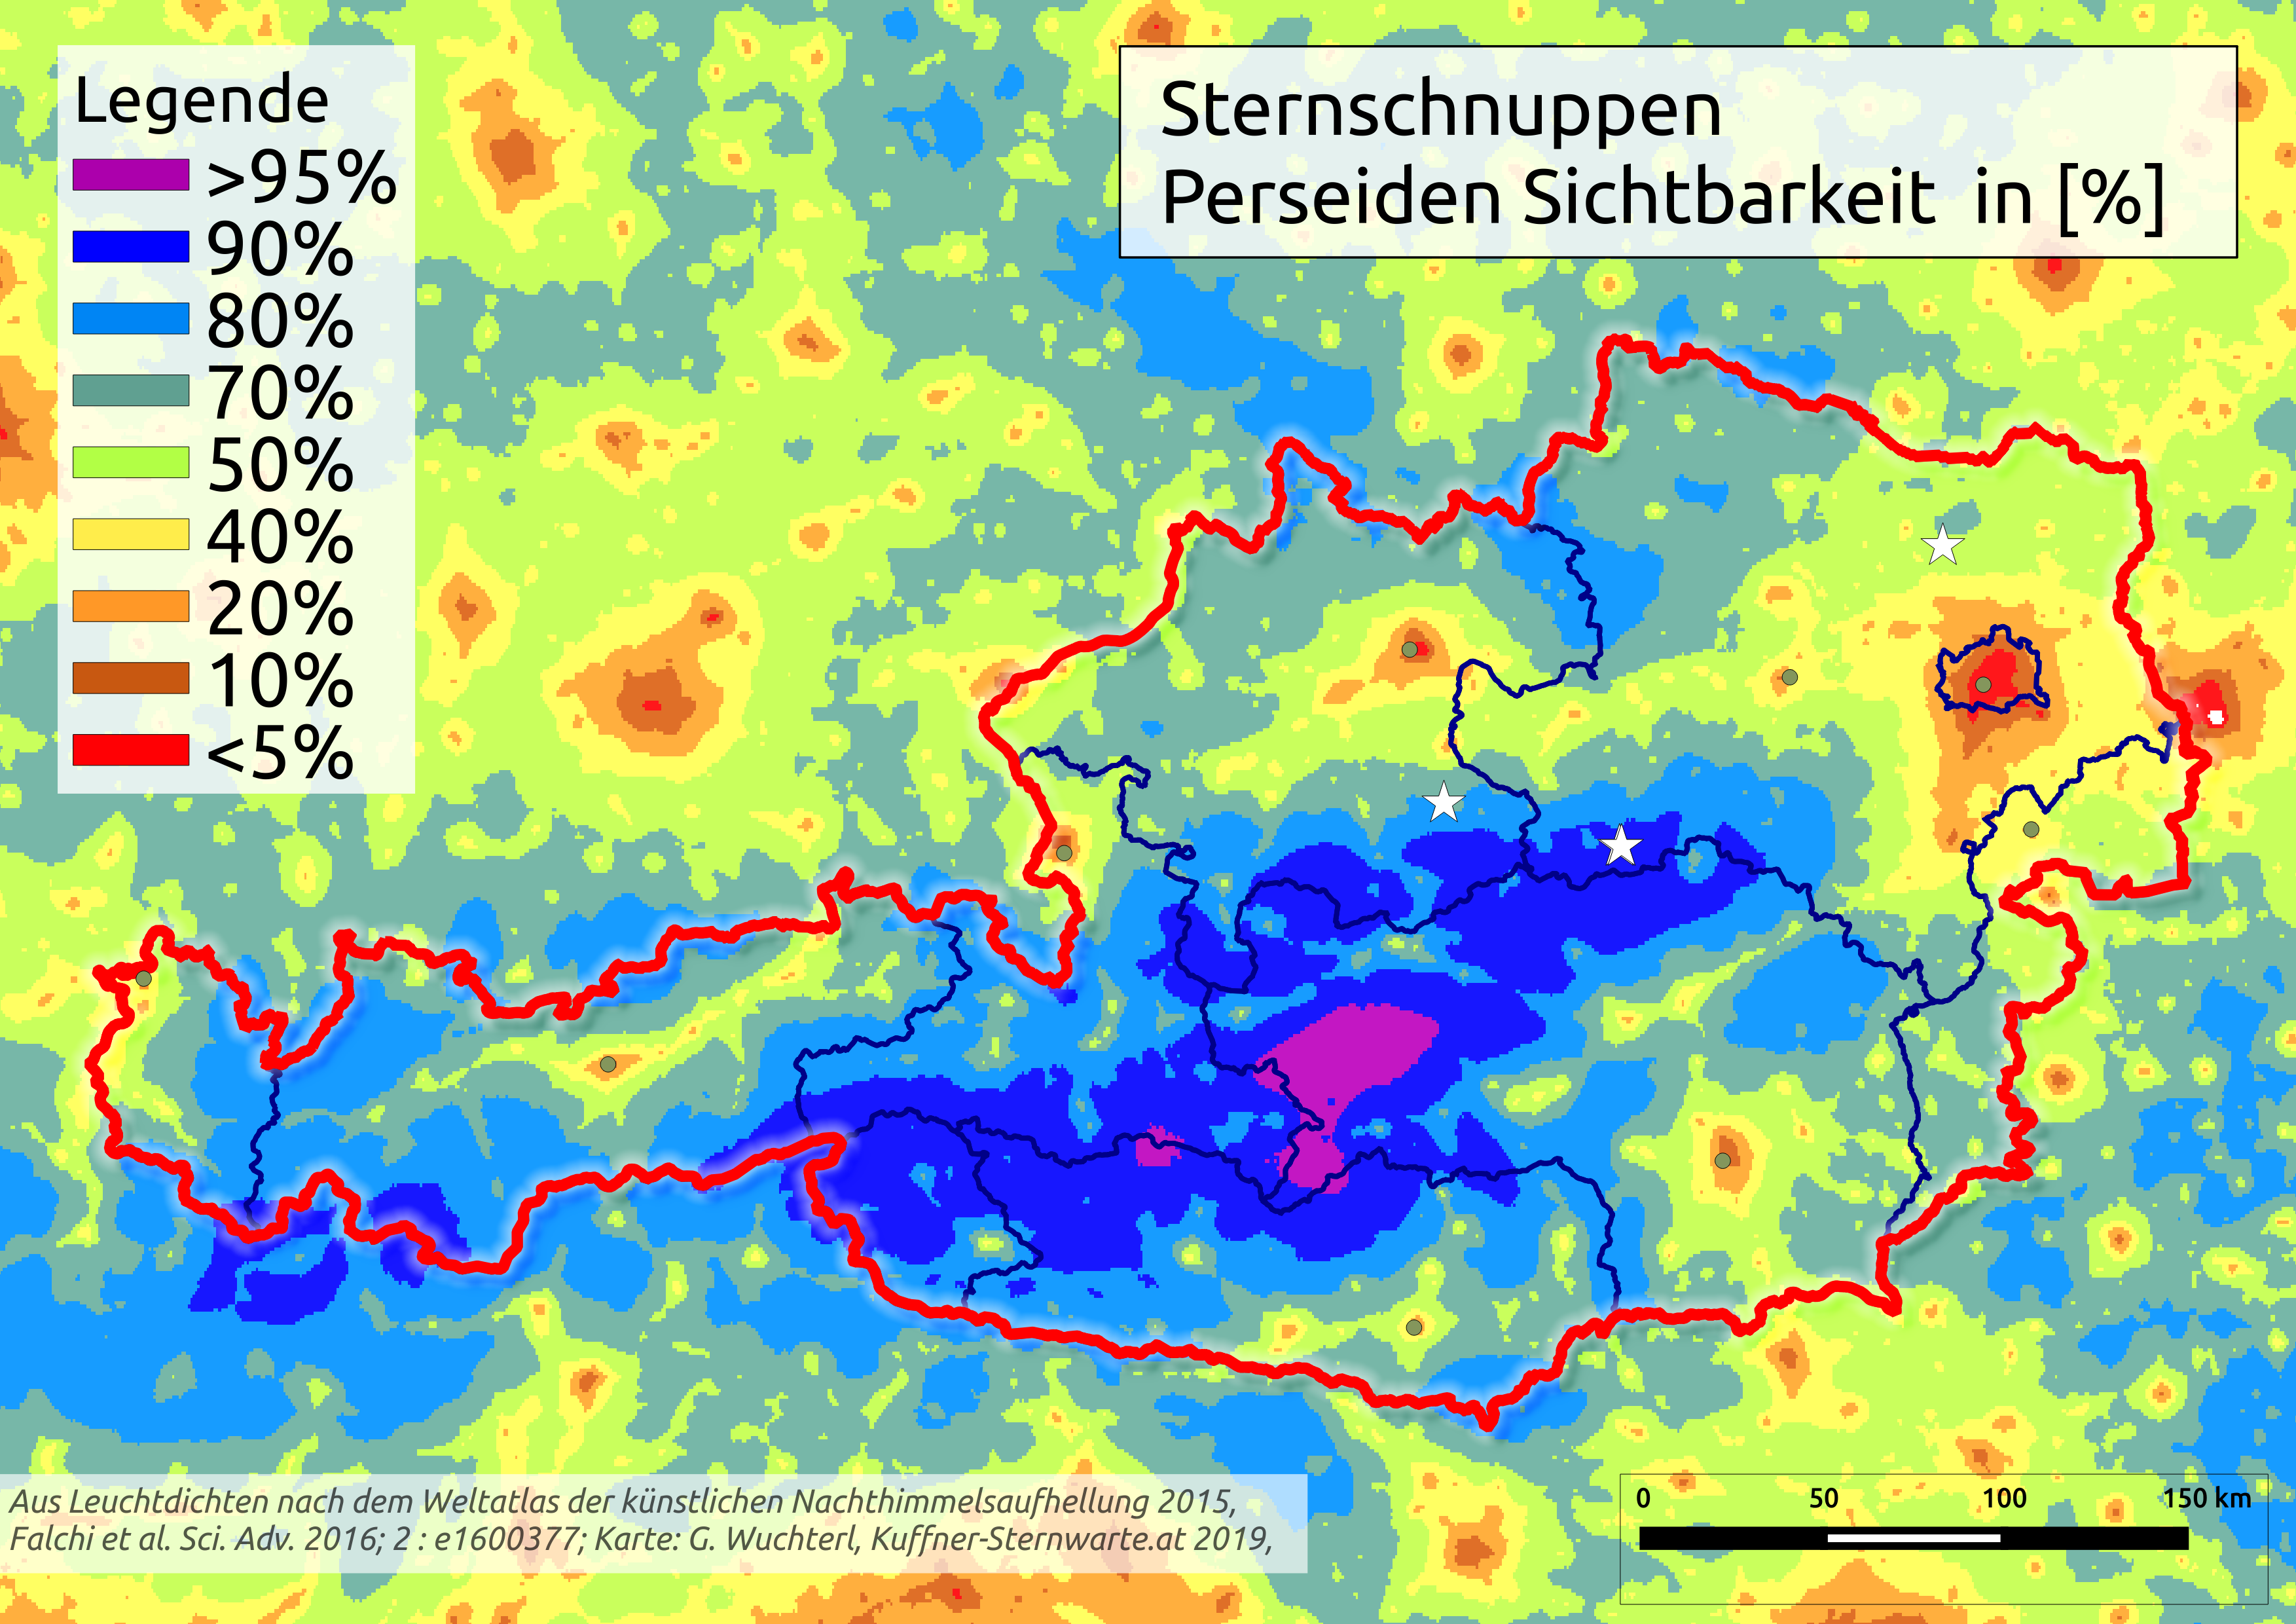 Ö Karte Sternschnuppensichtbarkeit. Credit: Lebensraum Naturnacht und Verein Kuffner-Sternwarte 